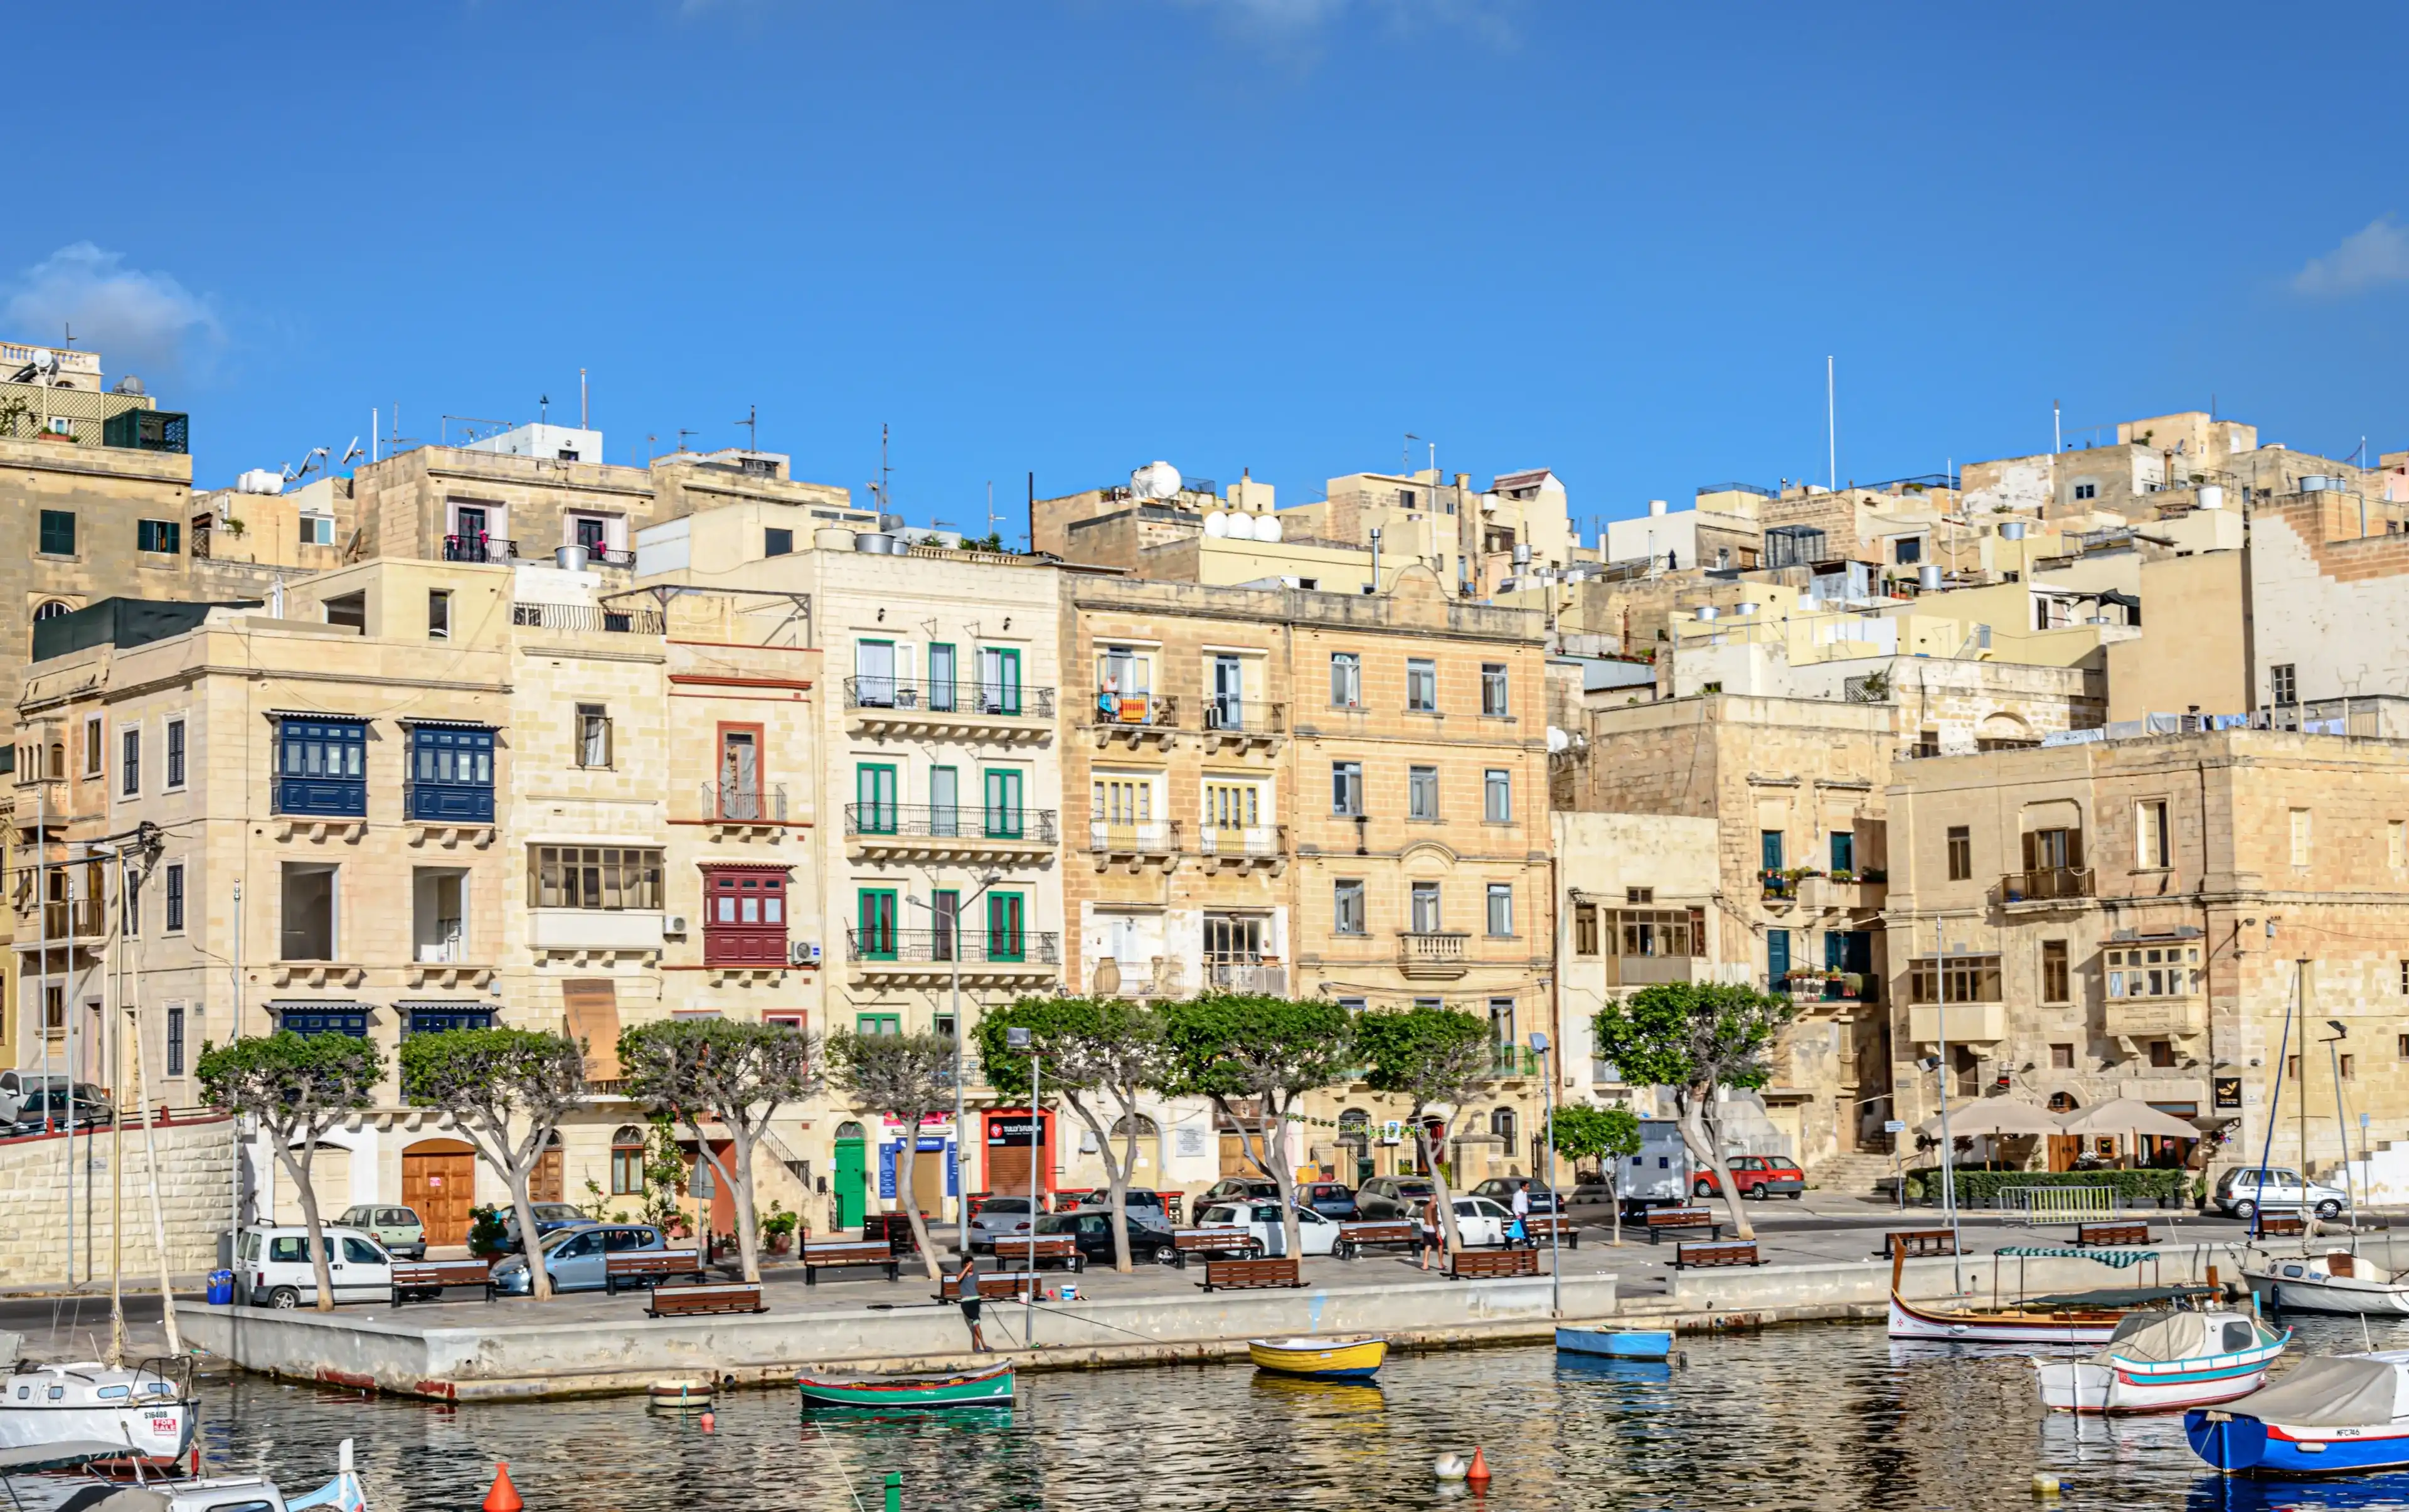 Senglea, Malta - August 14 2017: Maltese architecture